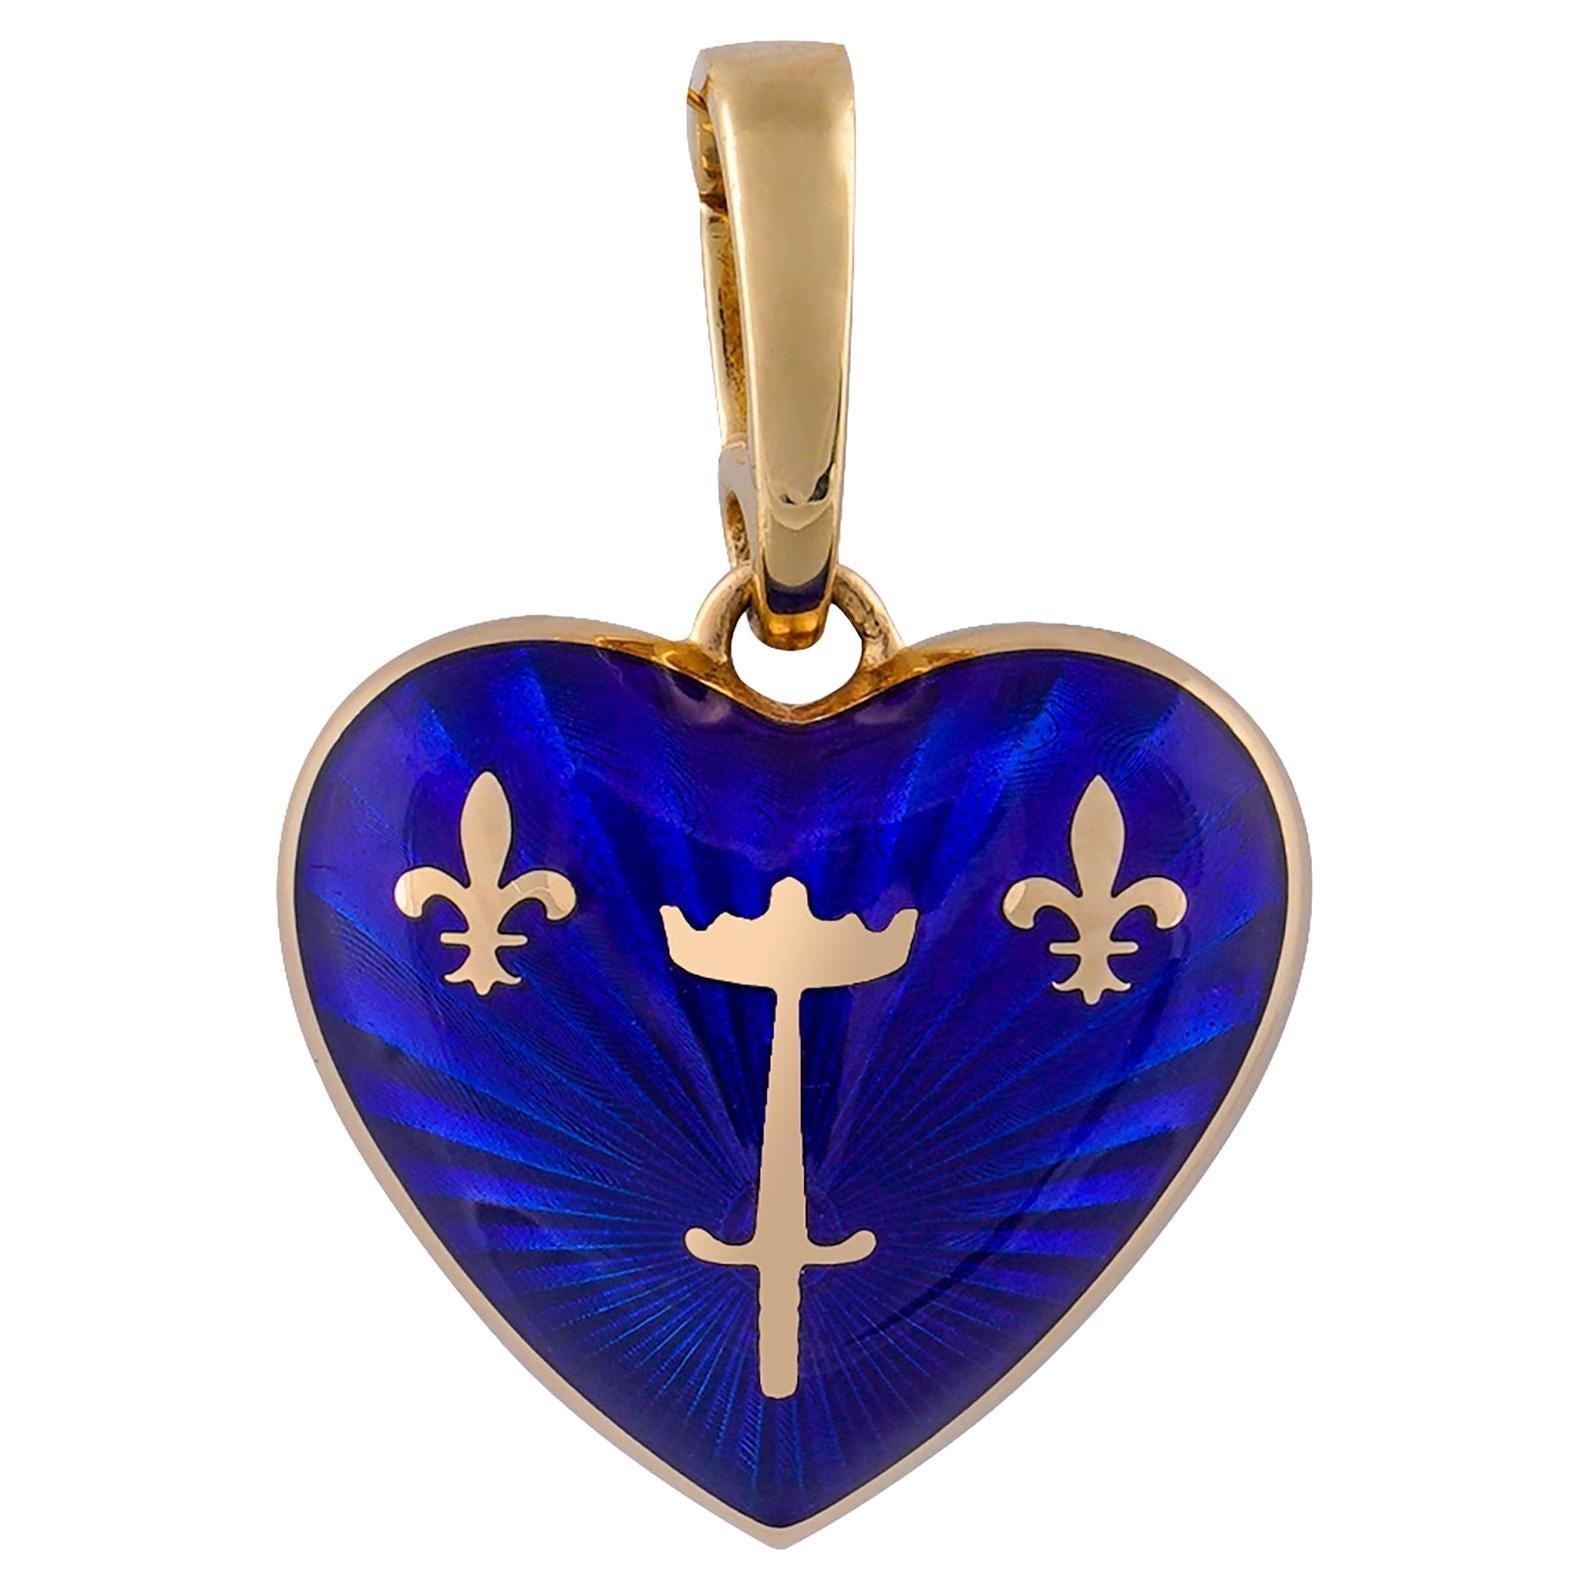 Mpereur Victor Mayer Le Coeur De Jeanne d’Arc Heart Pendant  For Sale